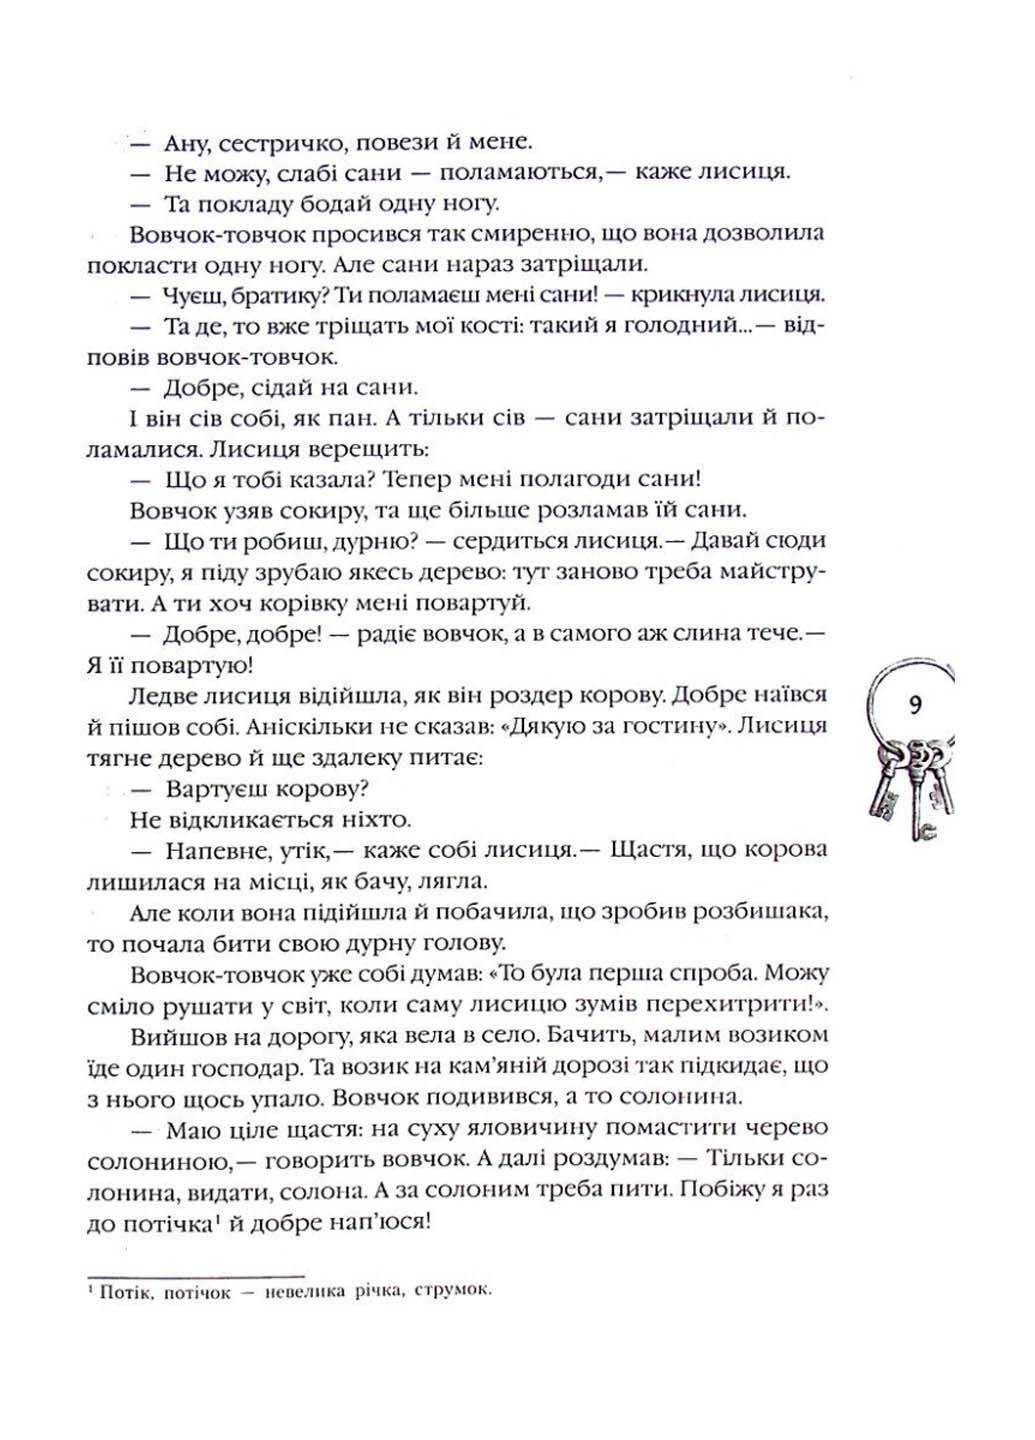 Книга Українські народні казки 2021р 296 с РАНОК (293058074)